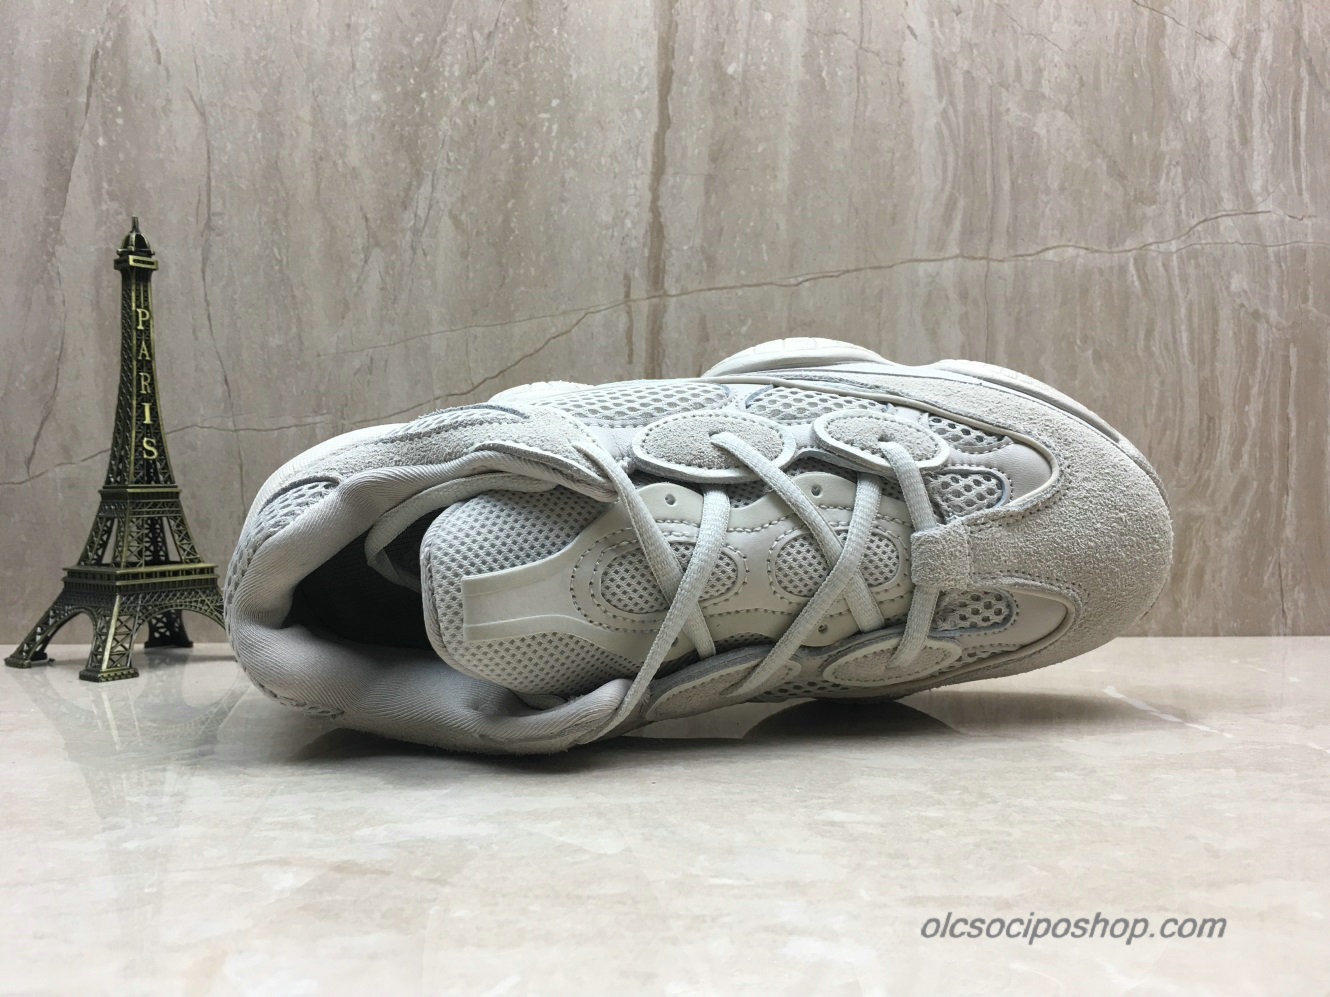 Adidas Yeezy Desert Rat 500 Blush Szürke Cipők (DB2908) - Kattintásra bezárul